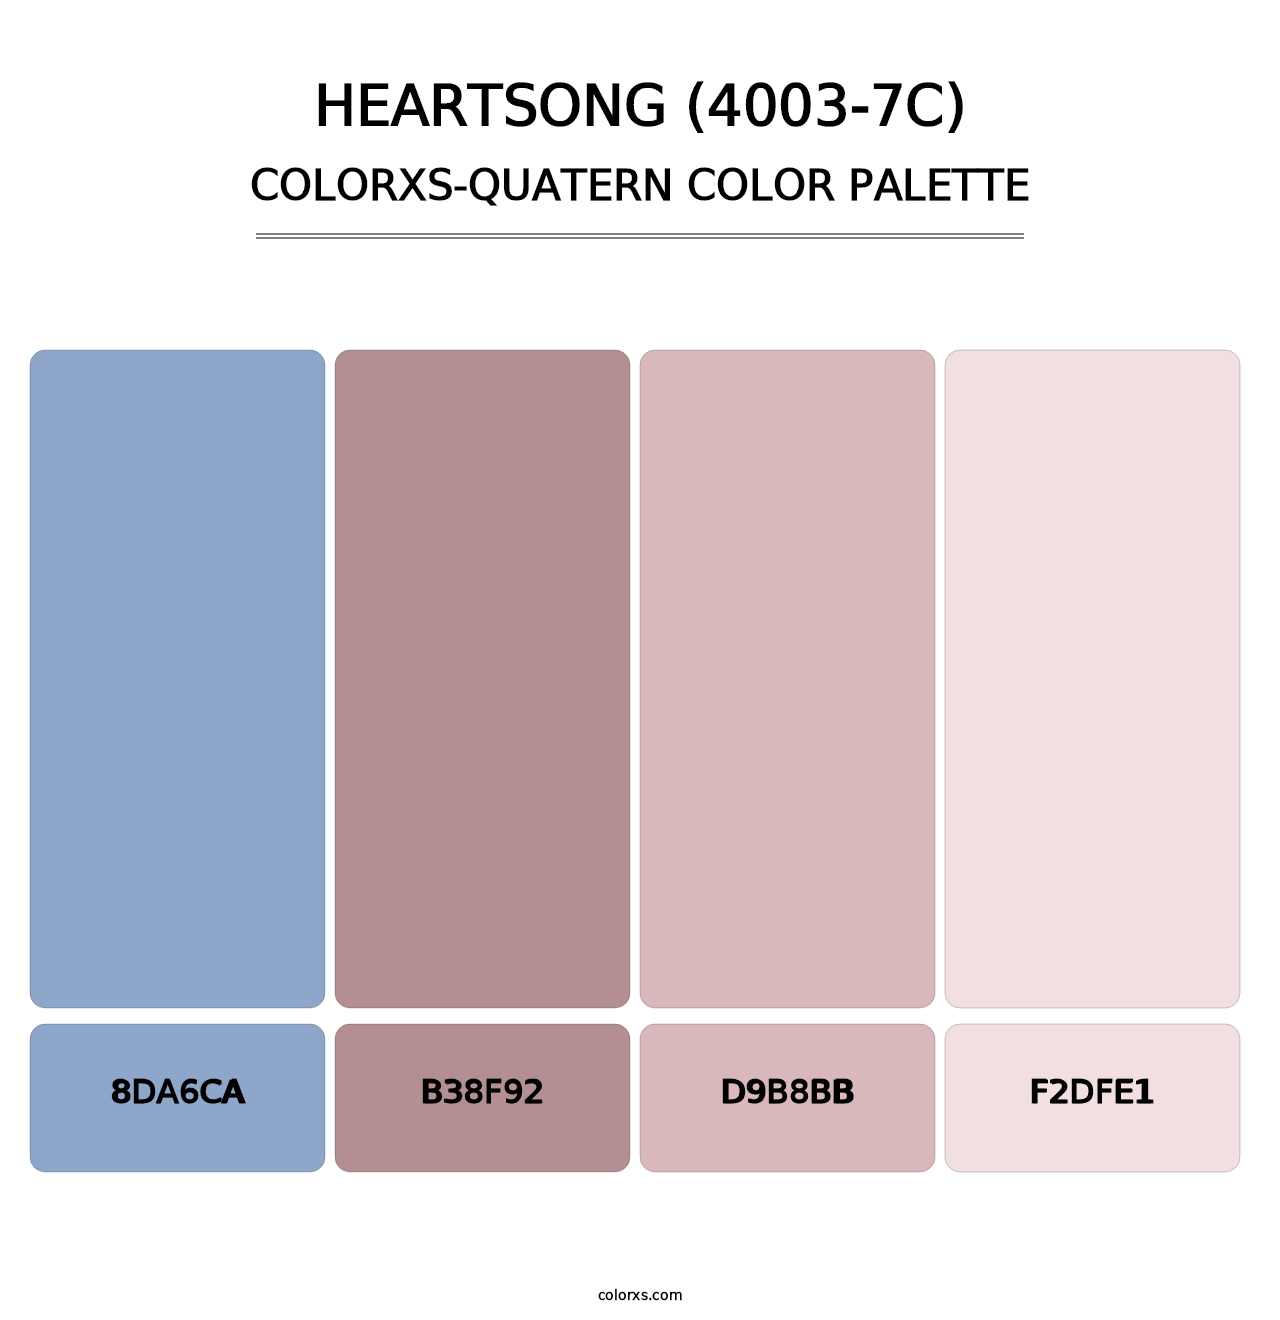 Heartsong (4003-7C) - Colorxs Quatern Palette